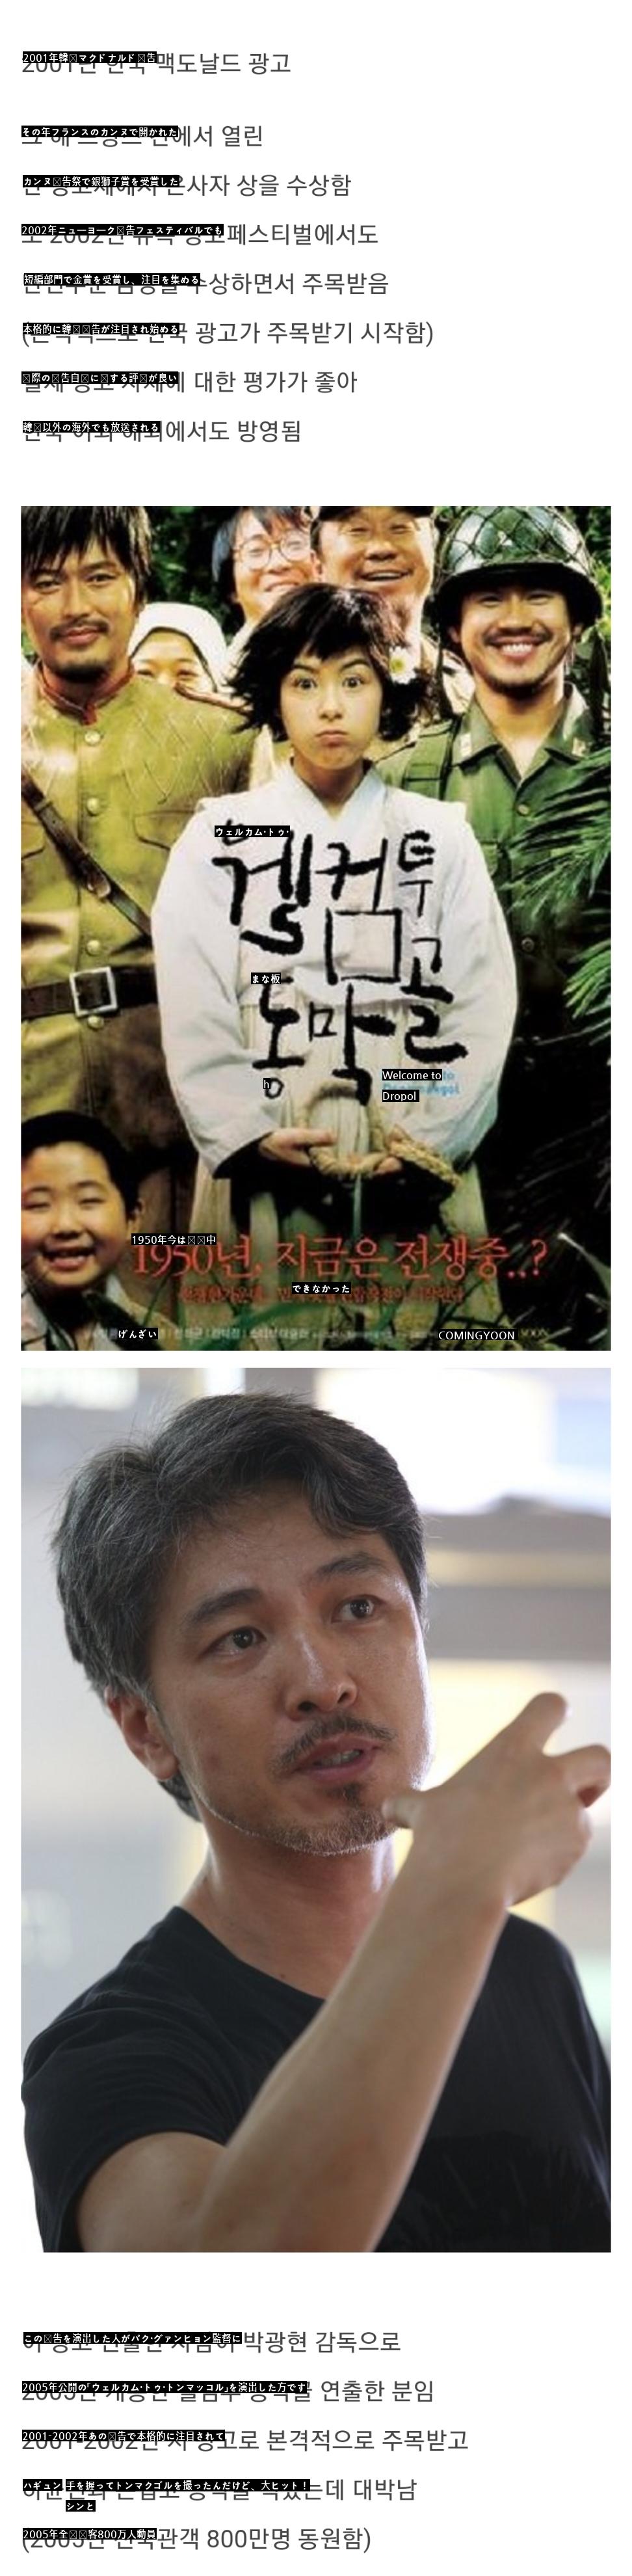 カンヌ国際広告祭で銀賞を受賞した韓国の広告jpg